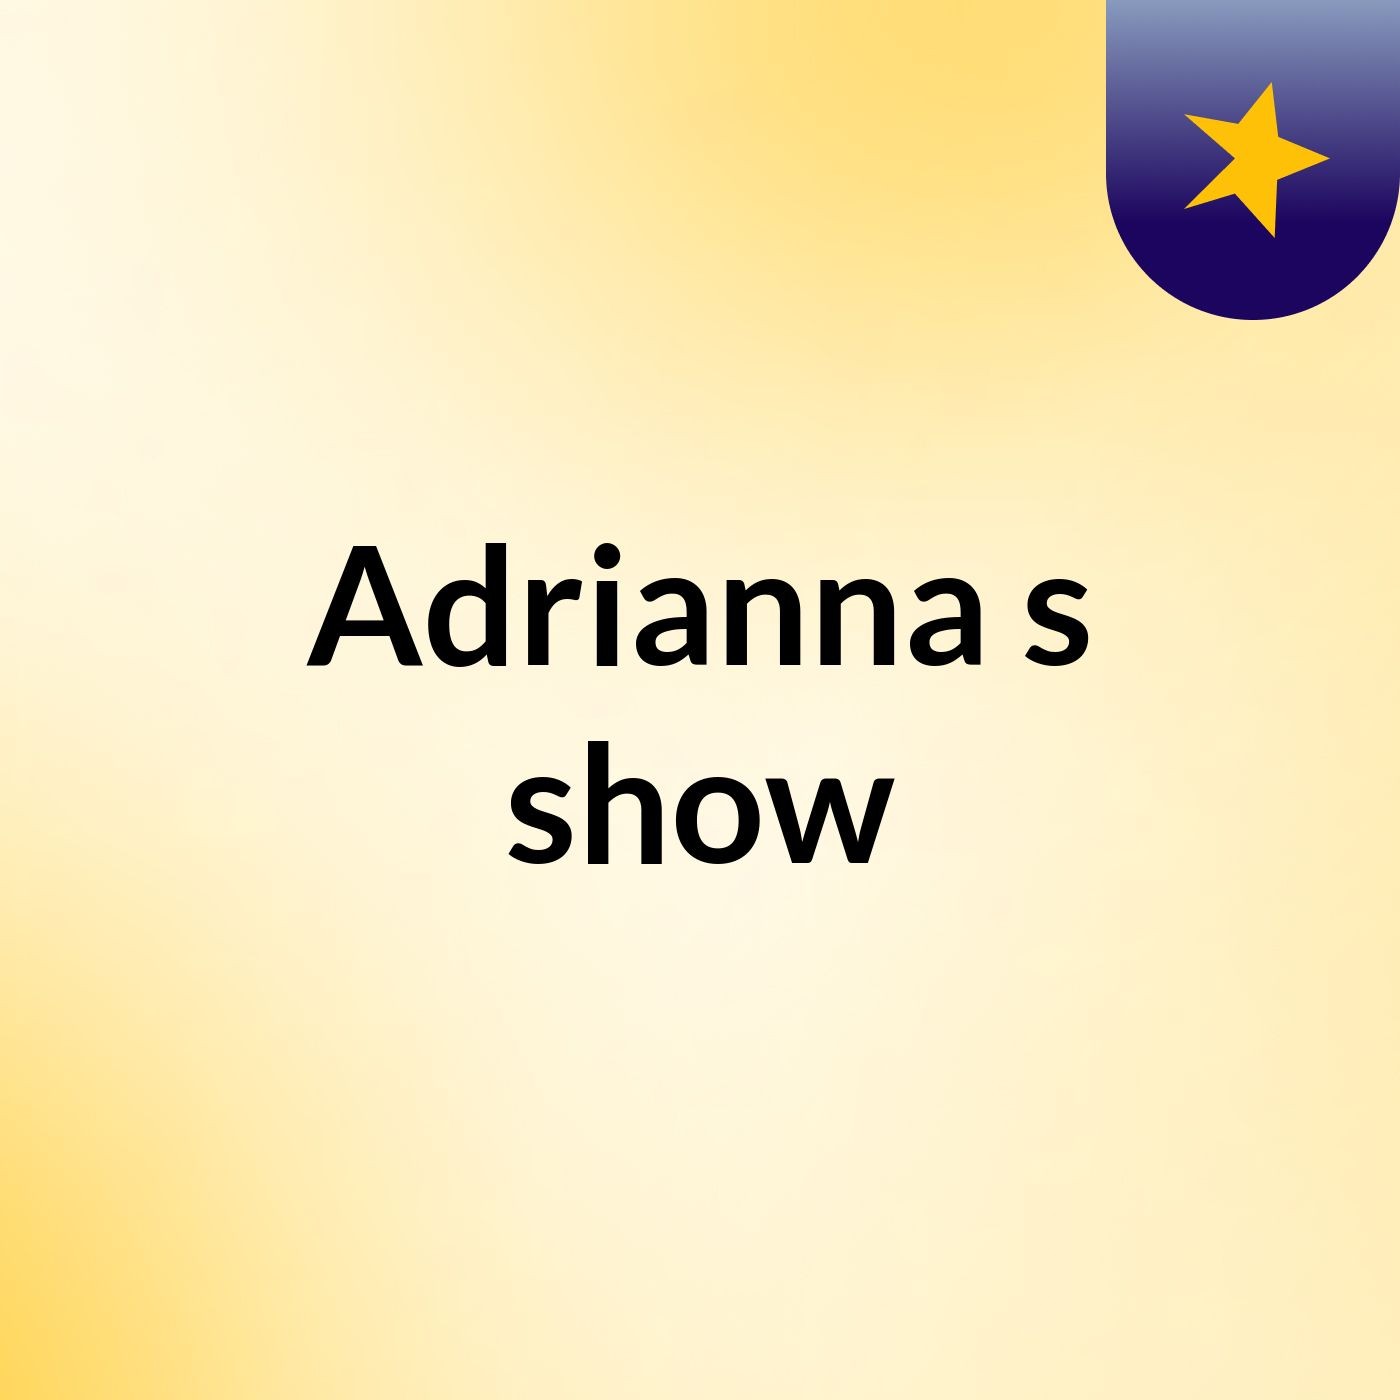 Adrianna's show